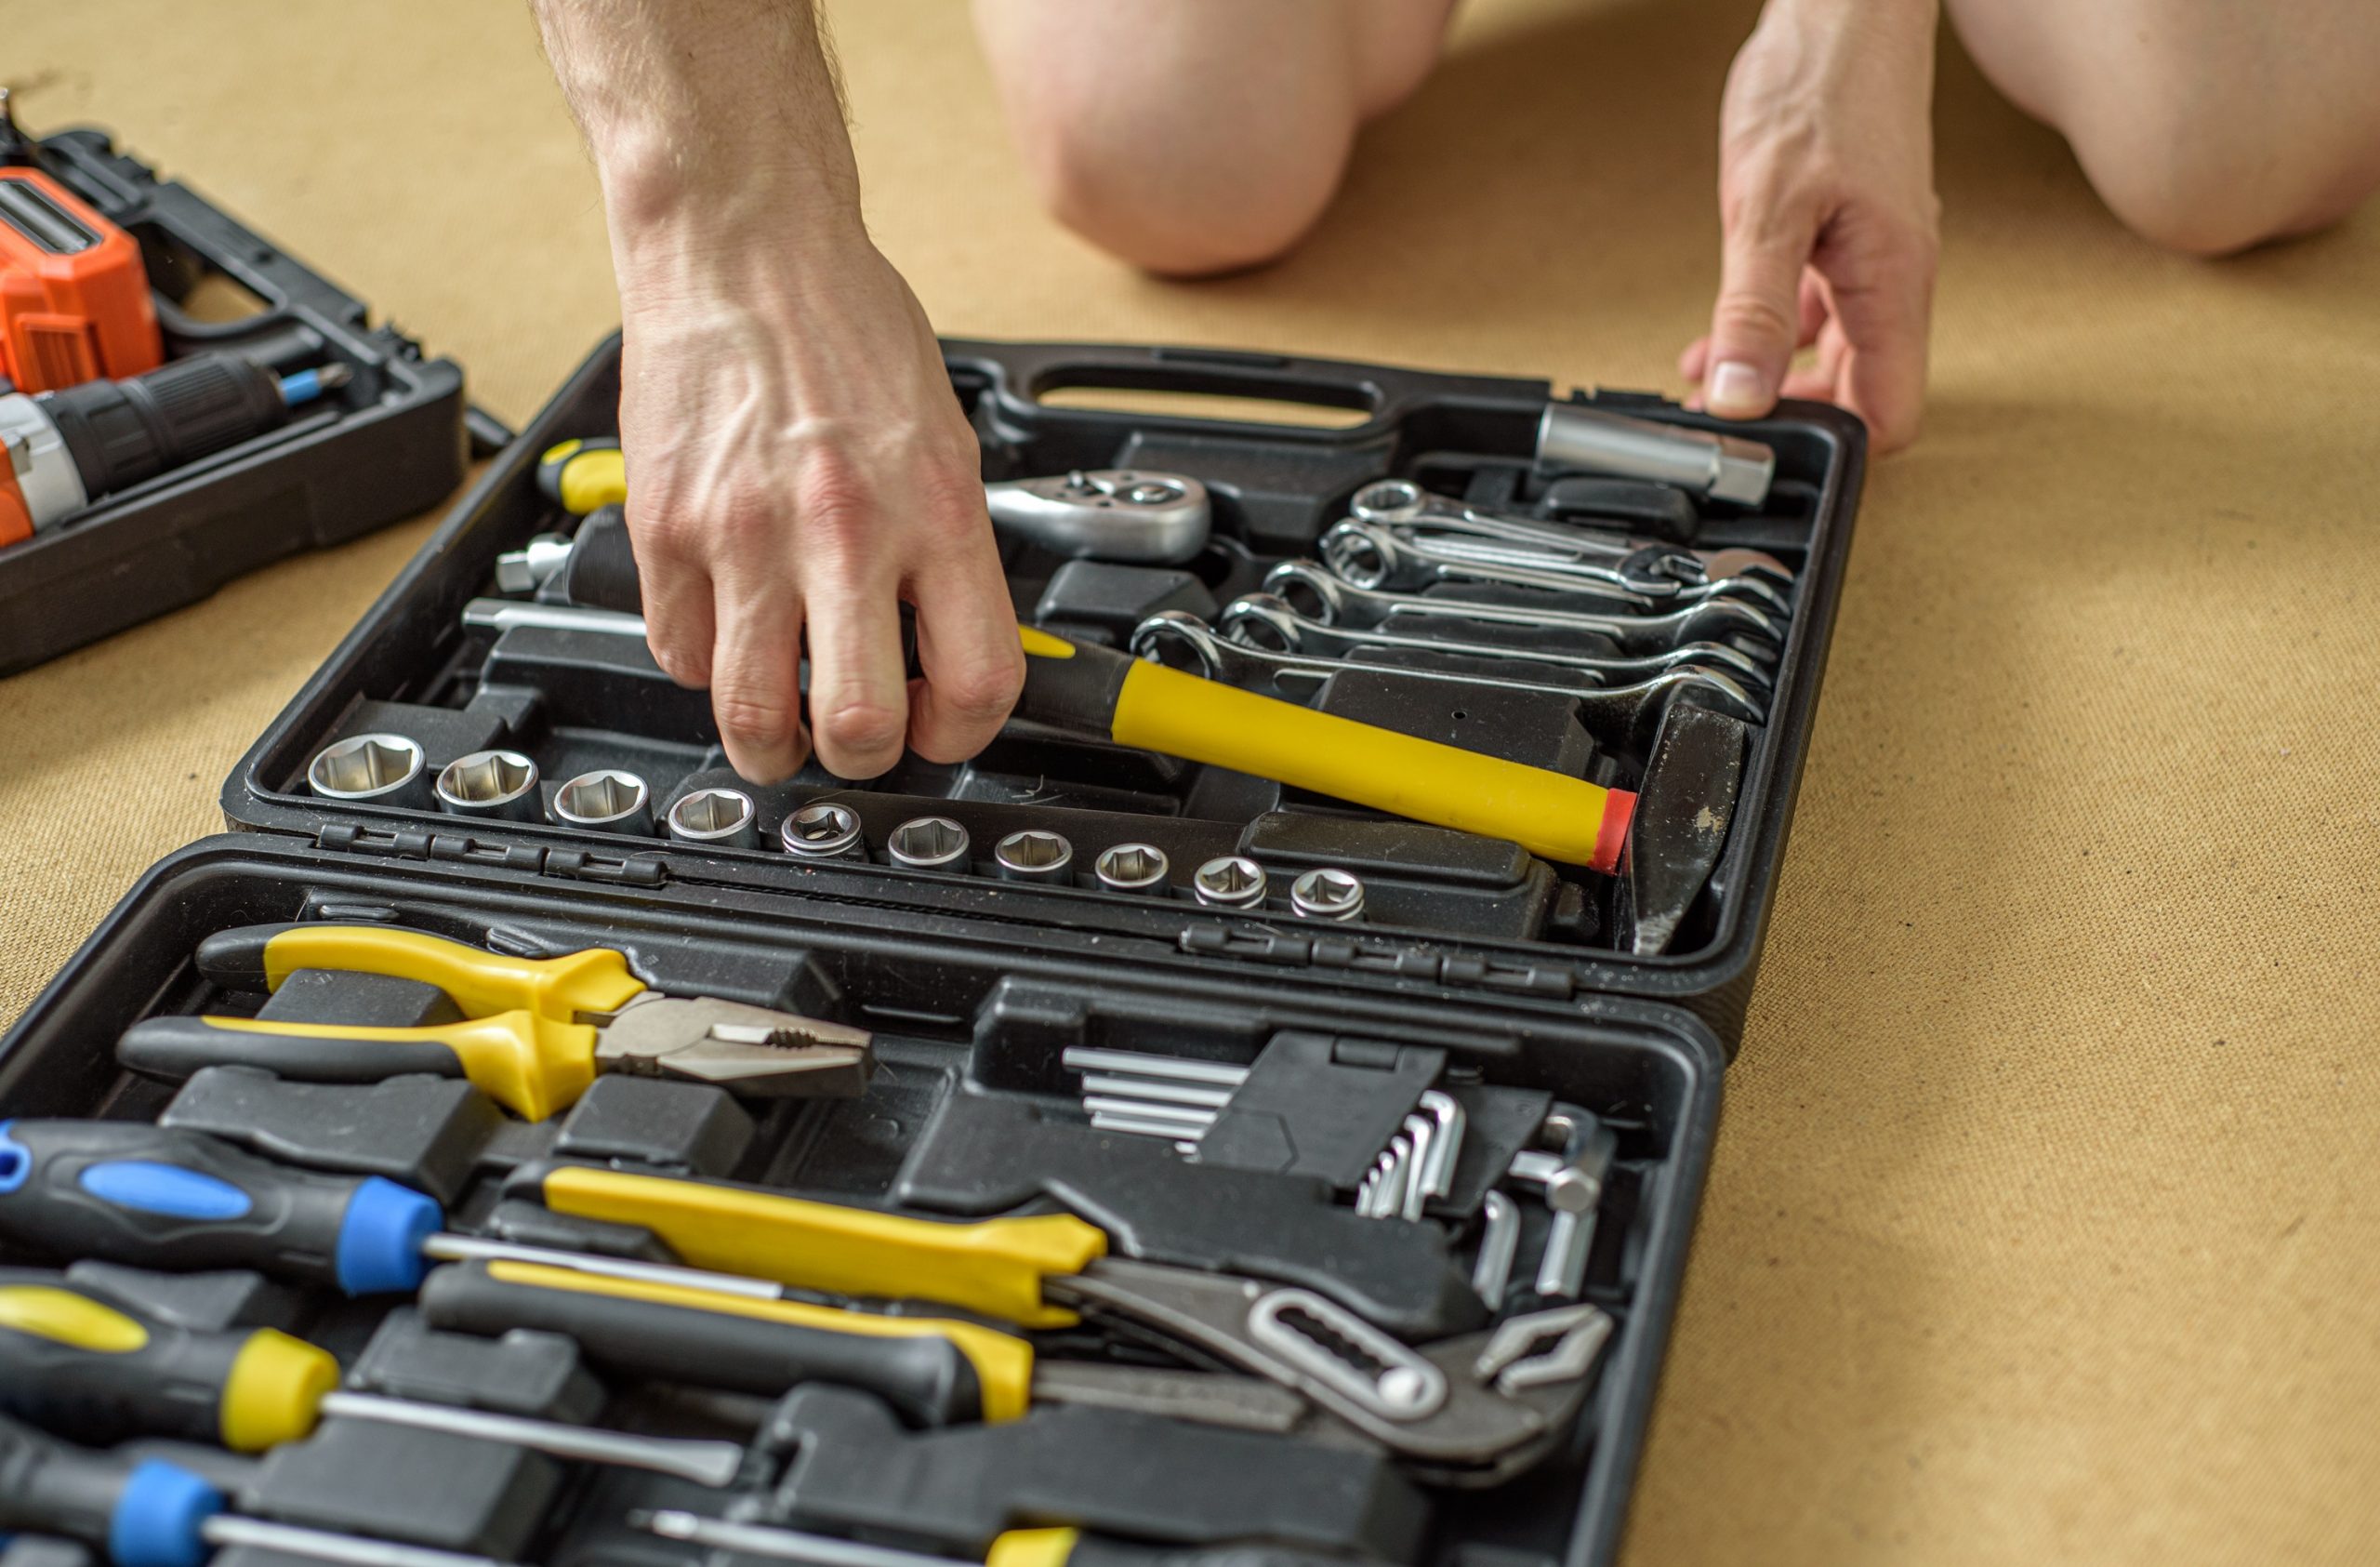 Na imagem, um homem está agachado, enquanto organiza uma caixa de ferramentas. A caixa está aberta apoiada na chão, com várias ferramentas dentro dela.